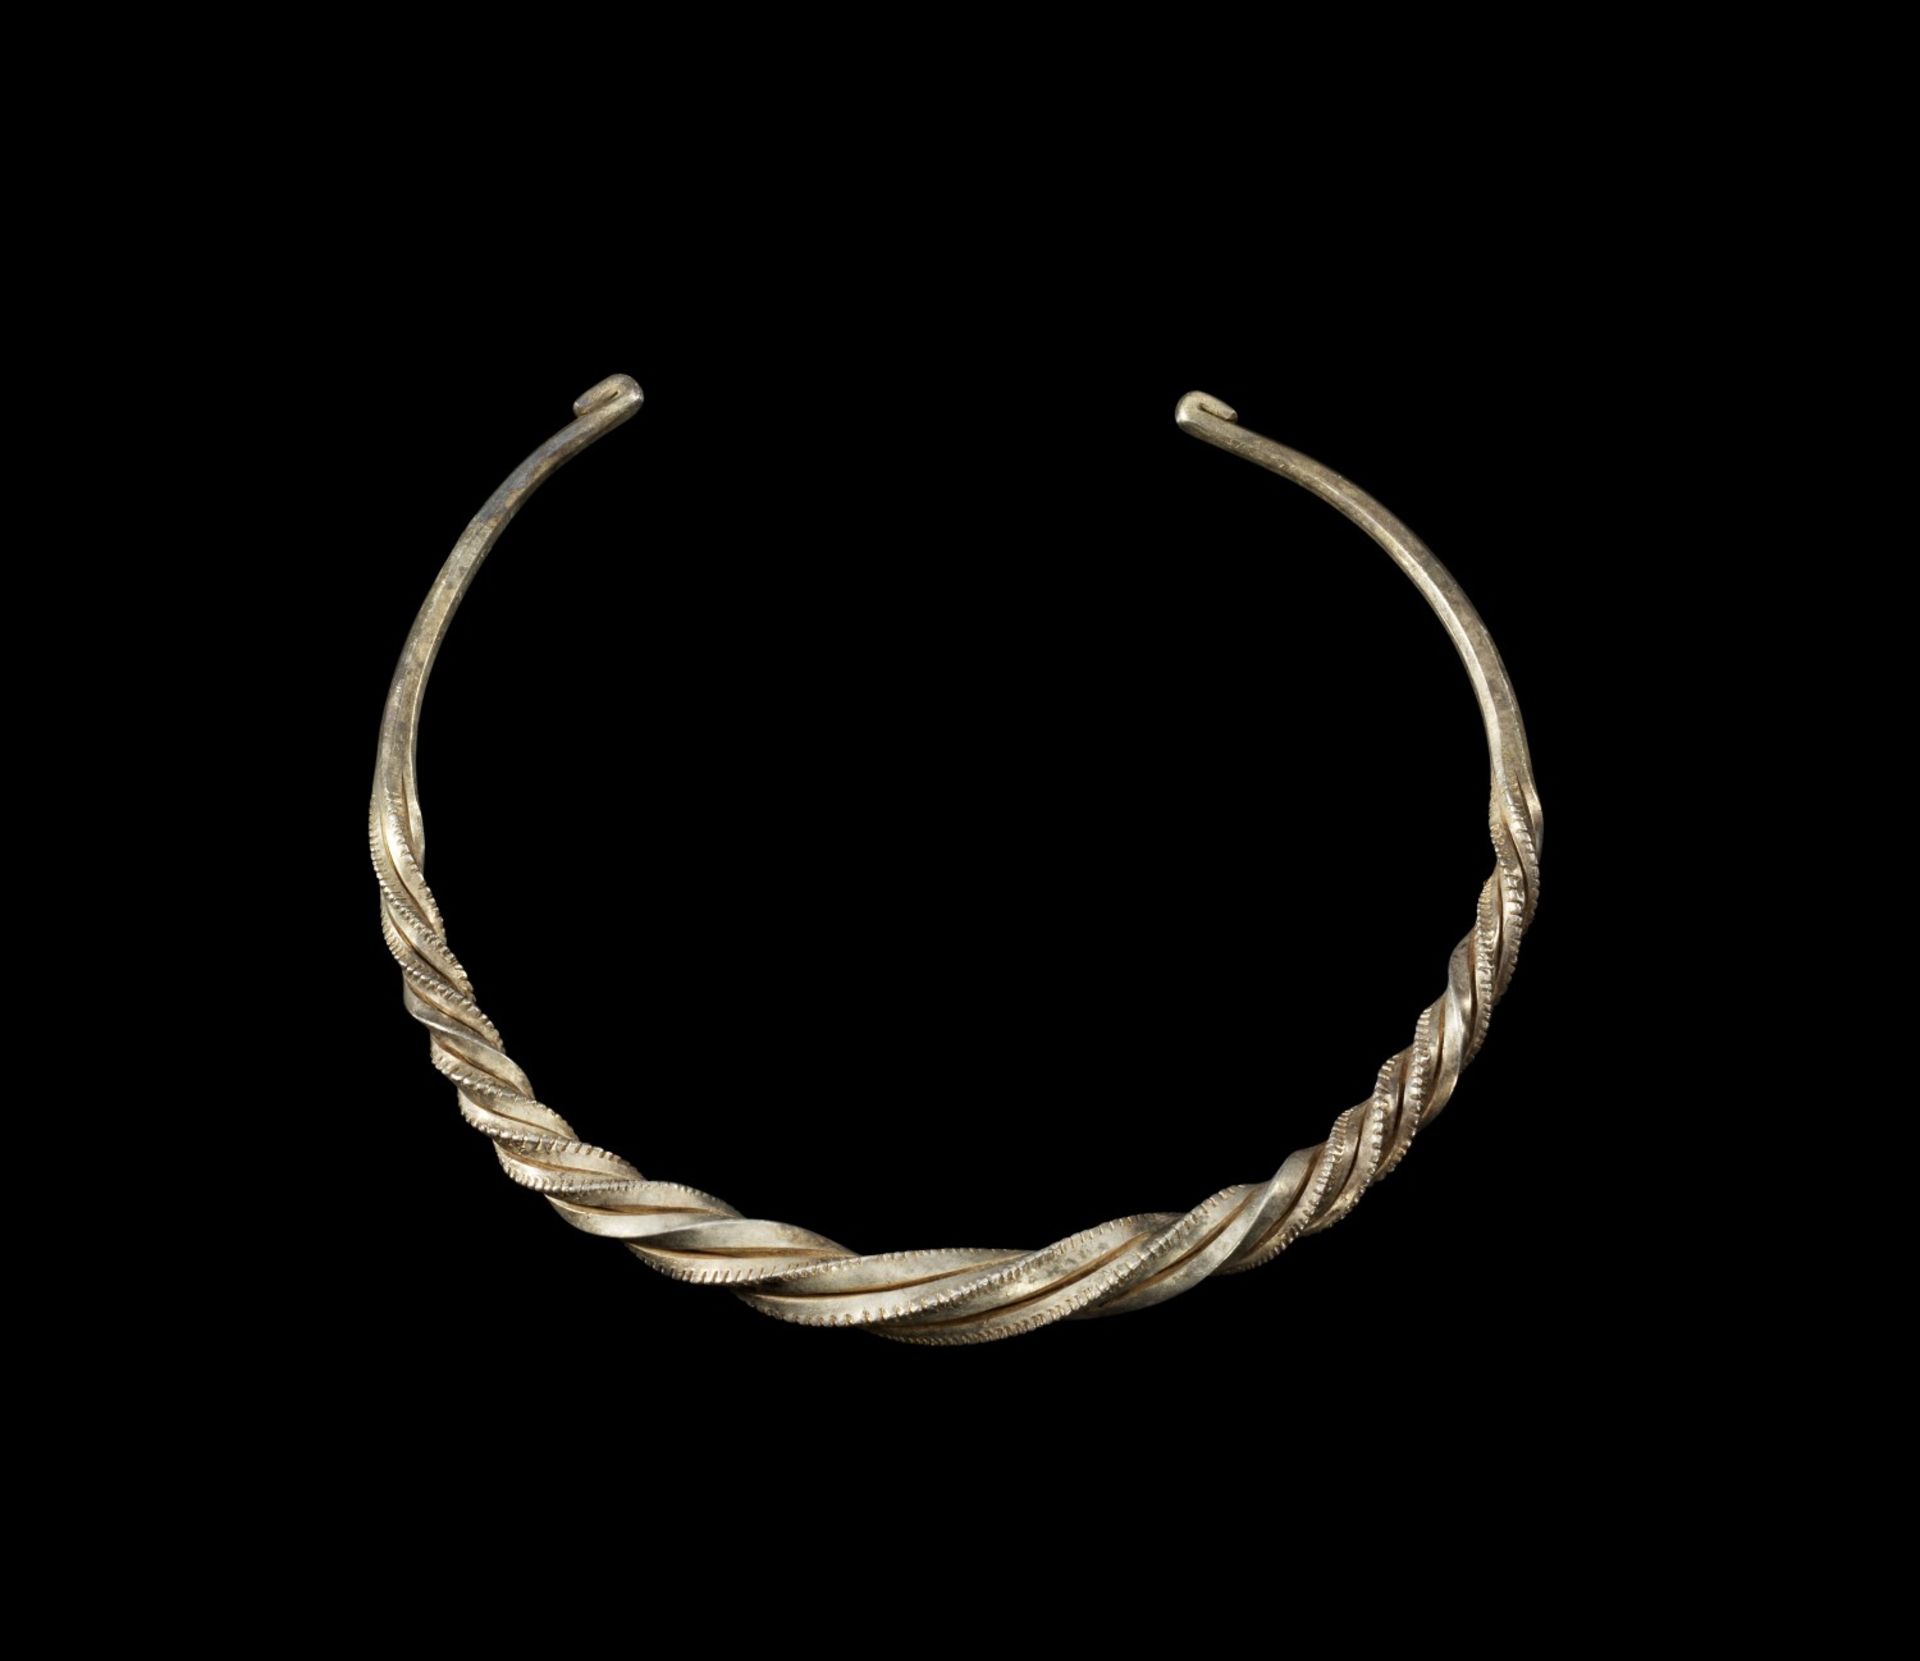 Torques aus Silber. Römisch, 1. - 2. Jh. n. Chr. ø 14cm. Offener Ring aus tordierten Vierkantstäben,